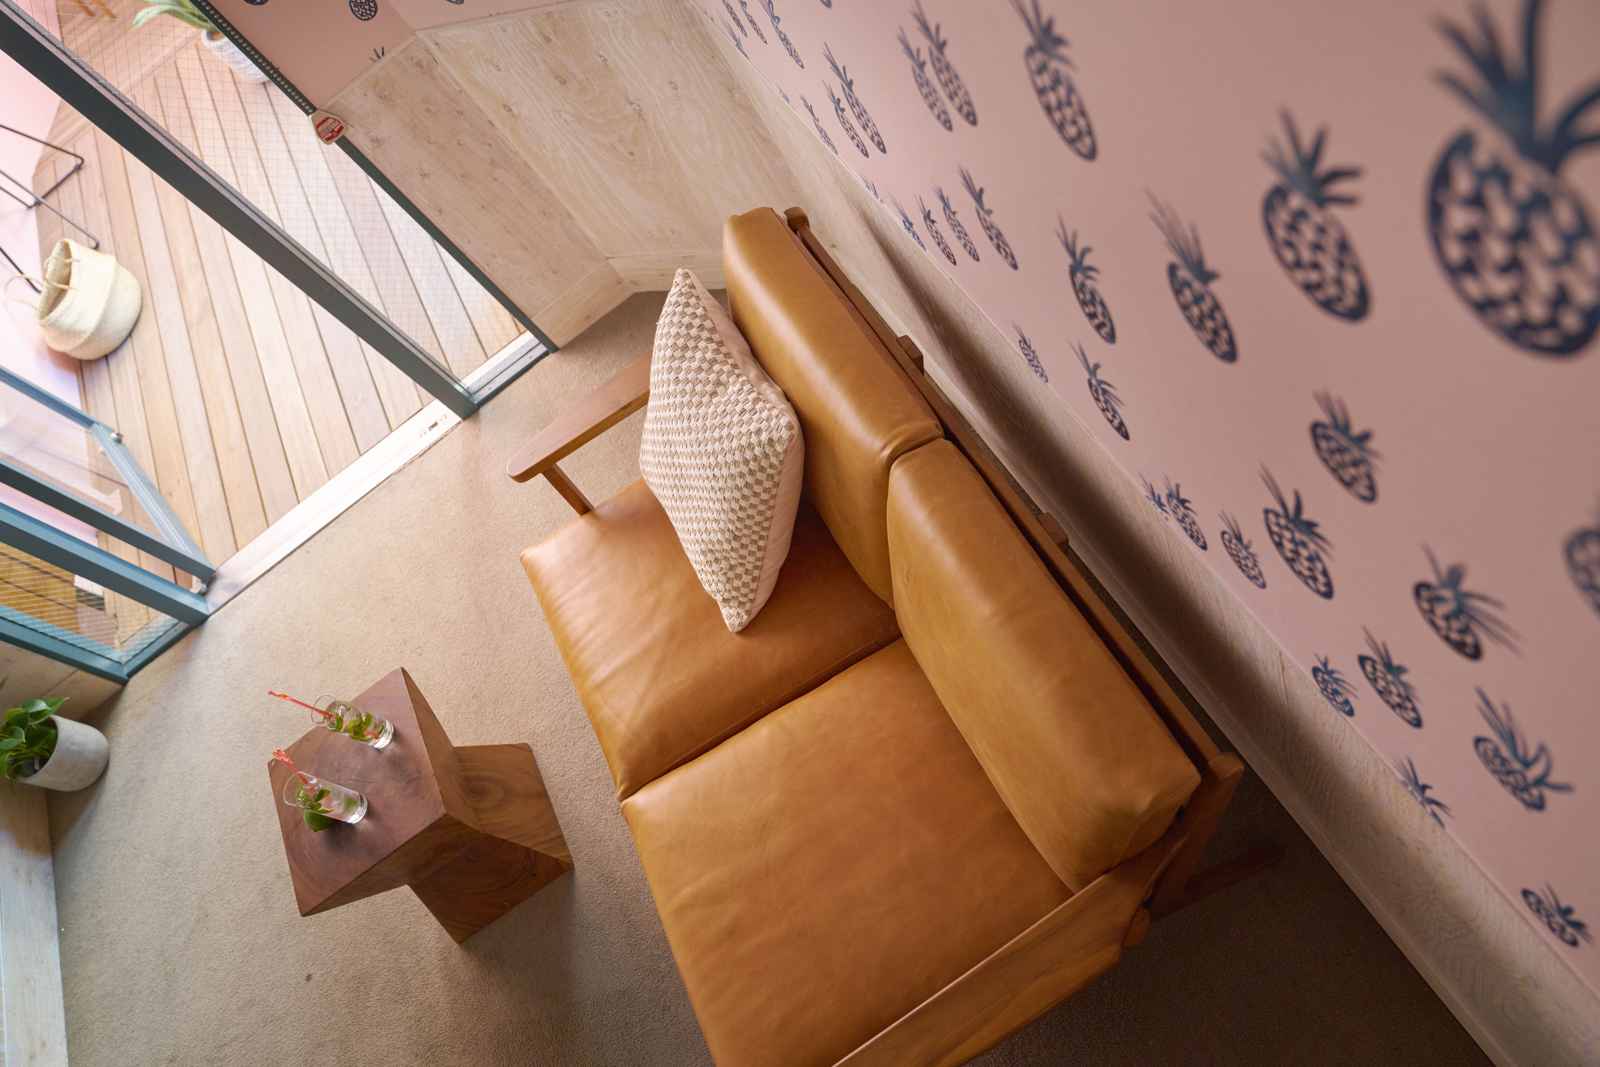 スツール 椅子 チェア ローチェア サイドテーブル 台形面 天然木 古材 北欧 モンキーポッド ウッド 小物置き 花台 フラワースタンド おしゃれ インテリア リビング 玄関